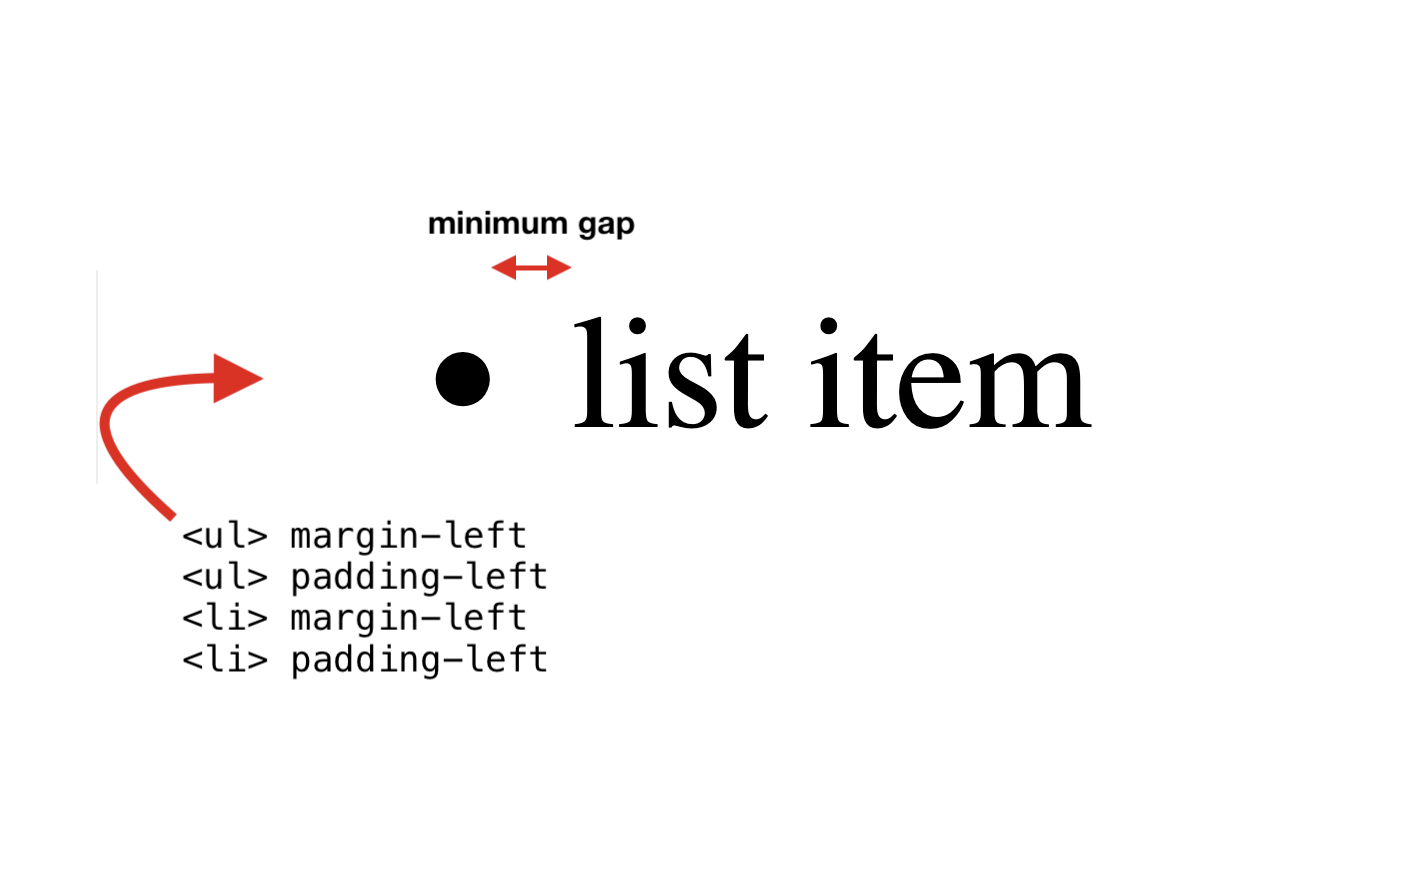 ארבעת המאפיינים: UL margin-left, UL padding-left, LI margin-left, LI padding-left.